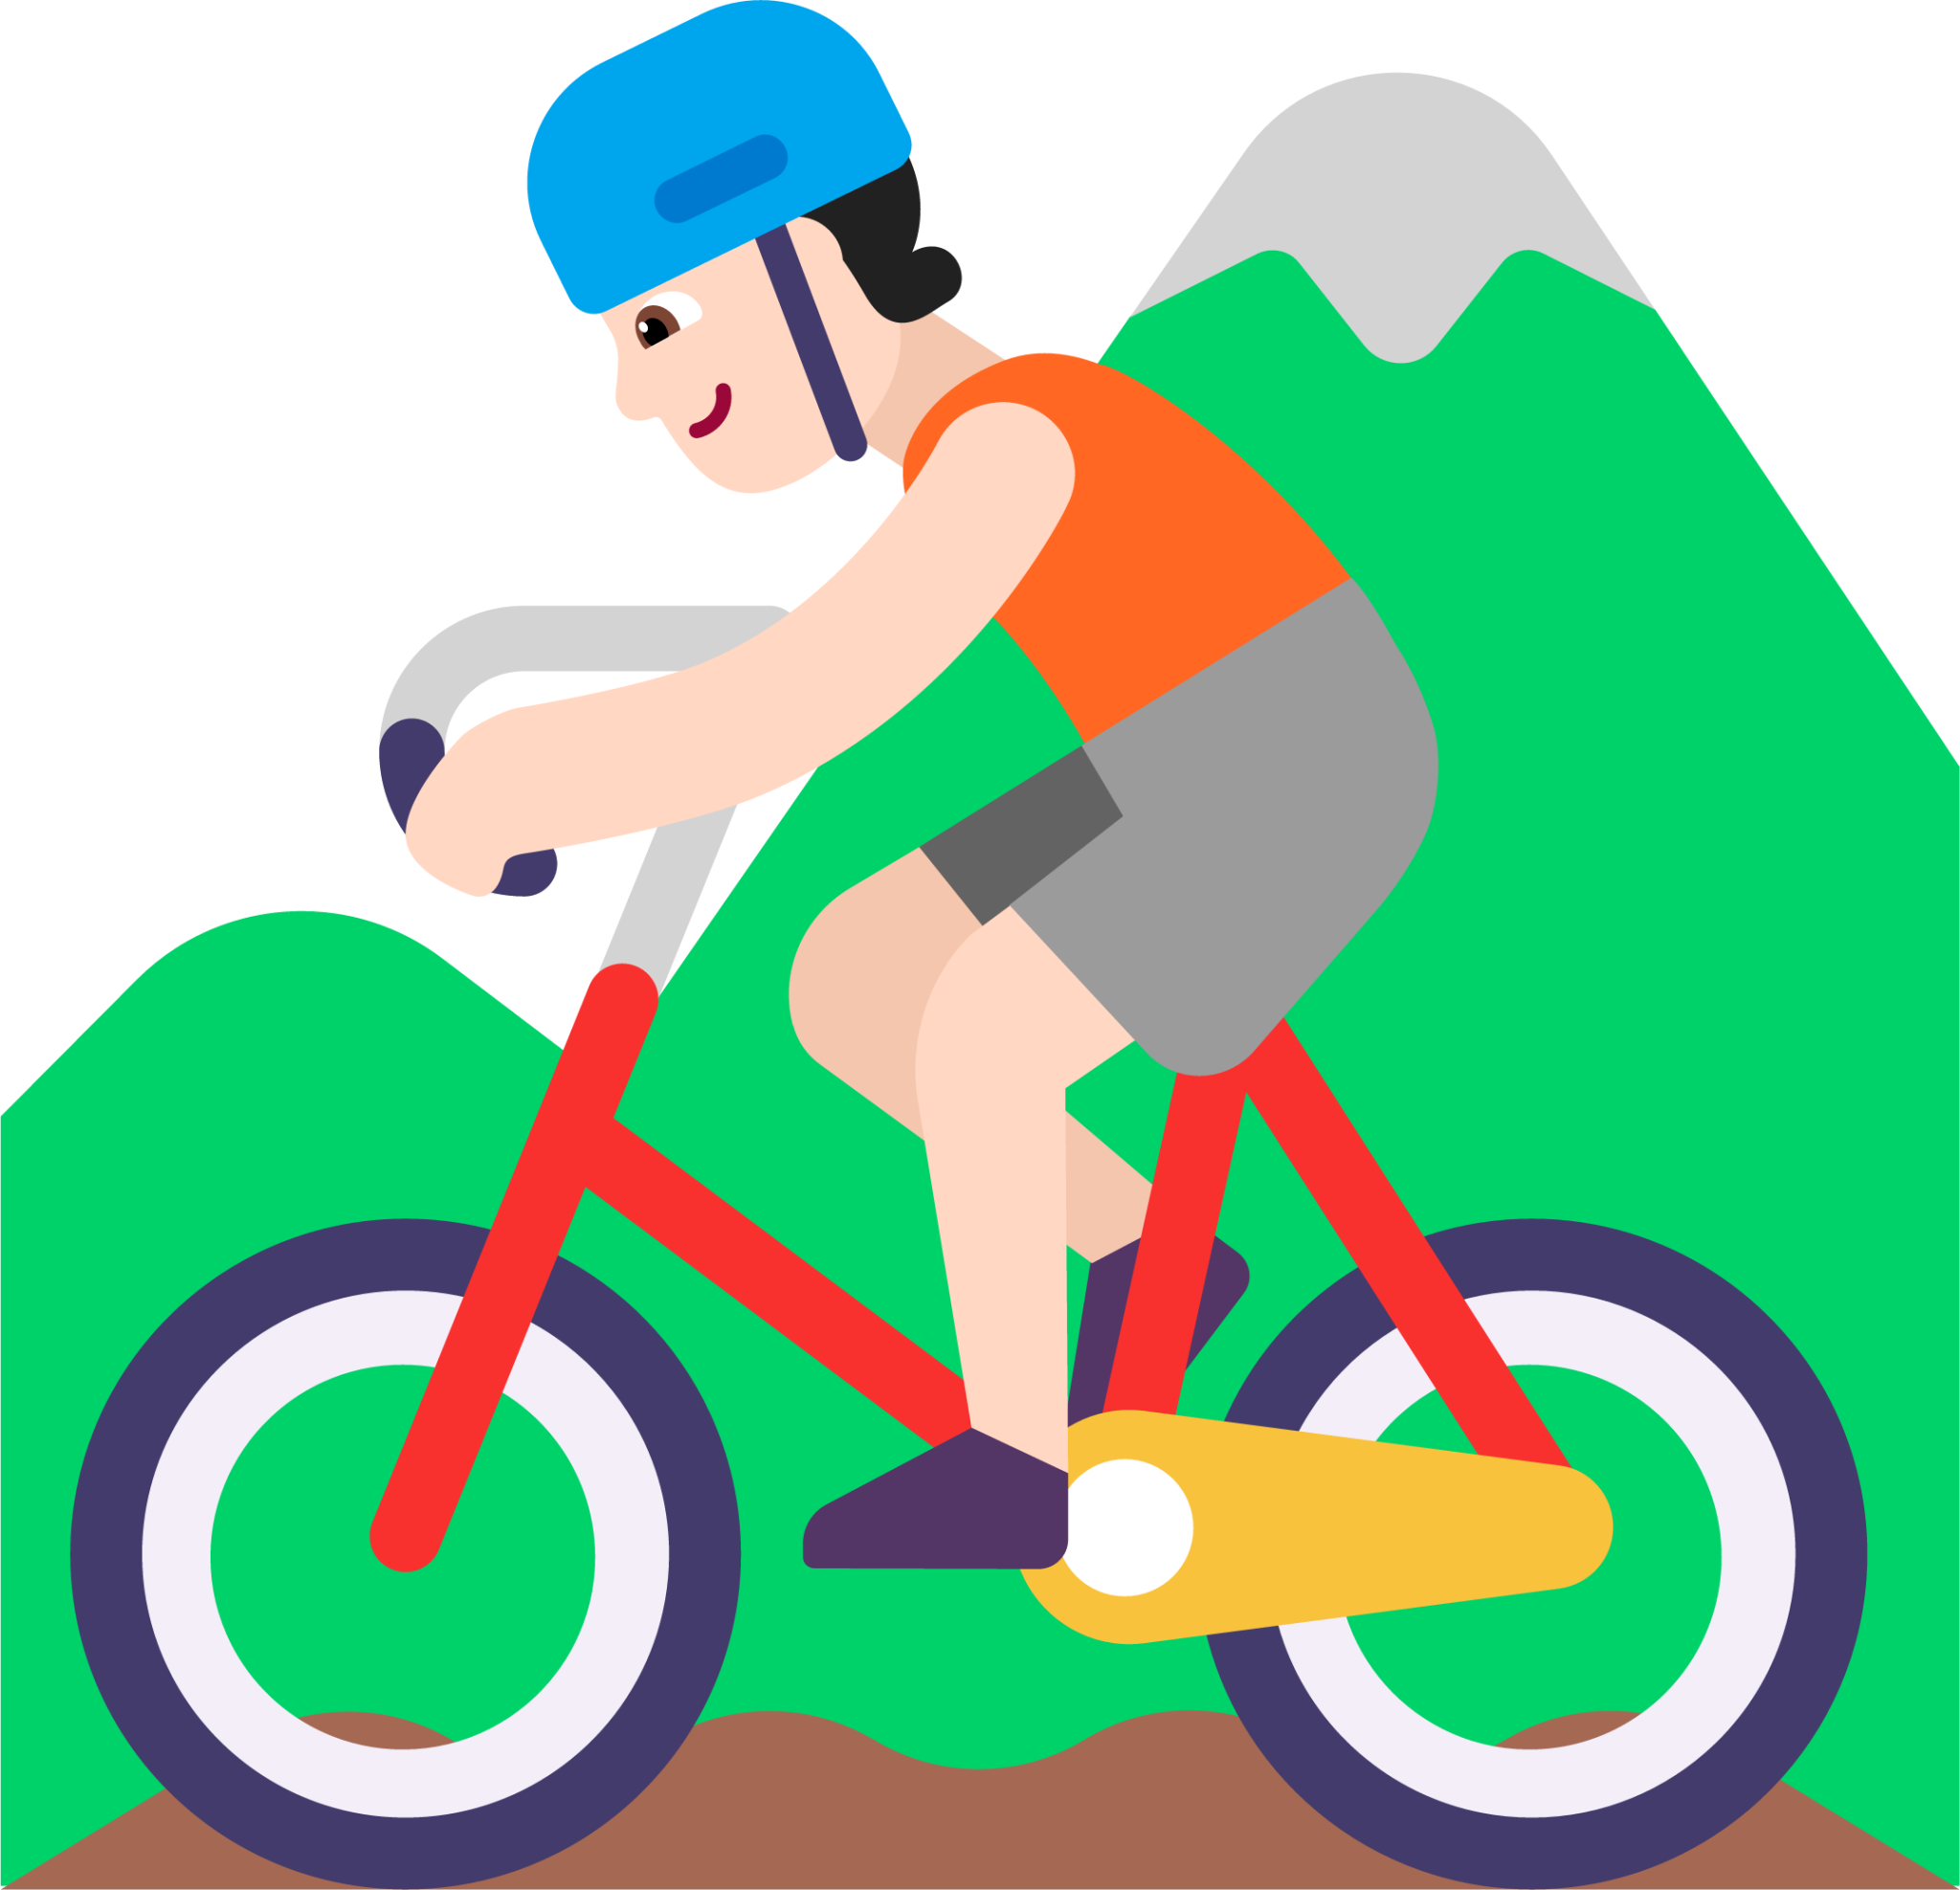 person mountain biking light emoji